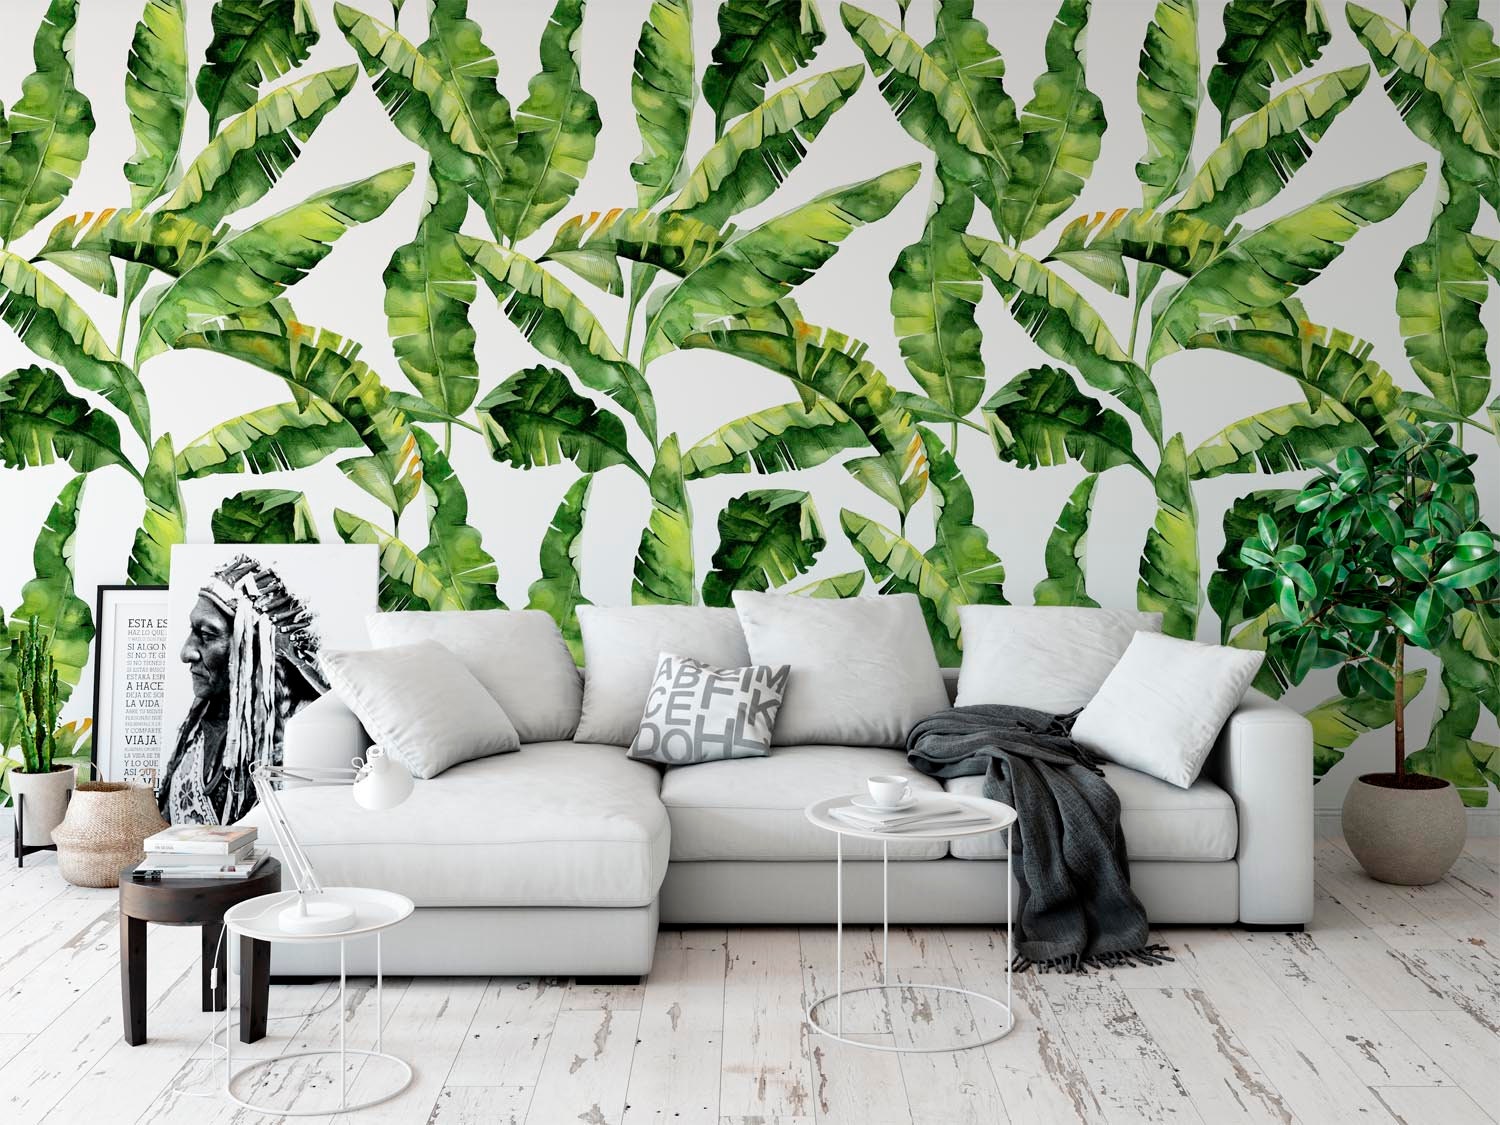 Watercolor Banana Leaf Wallpaper Tropical Leaves Nursery Decor | Etsy